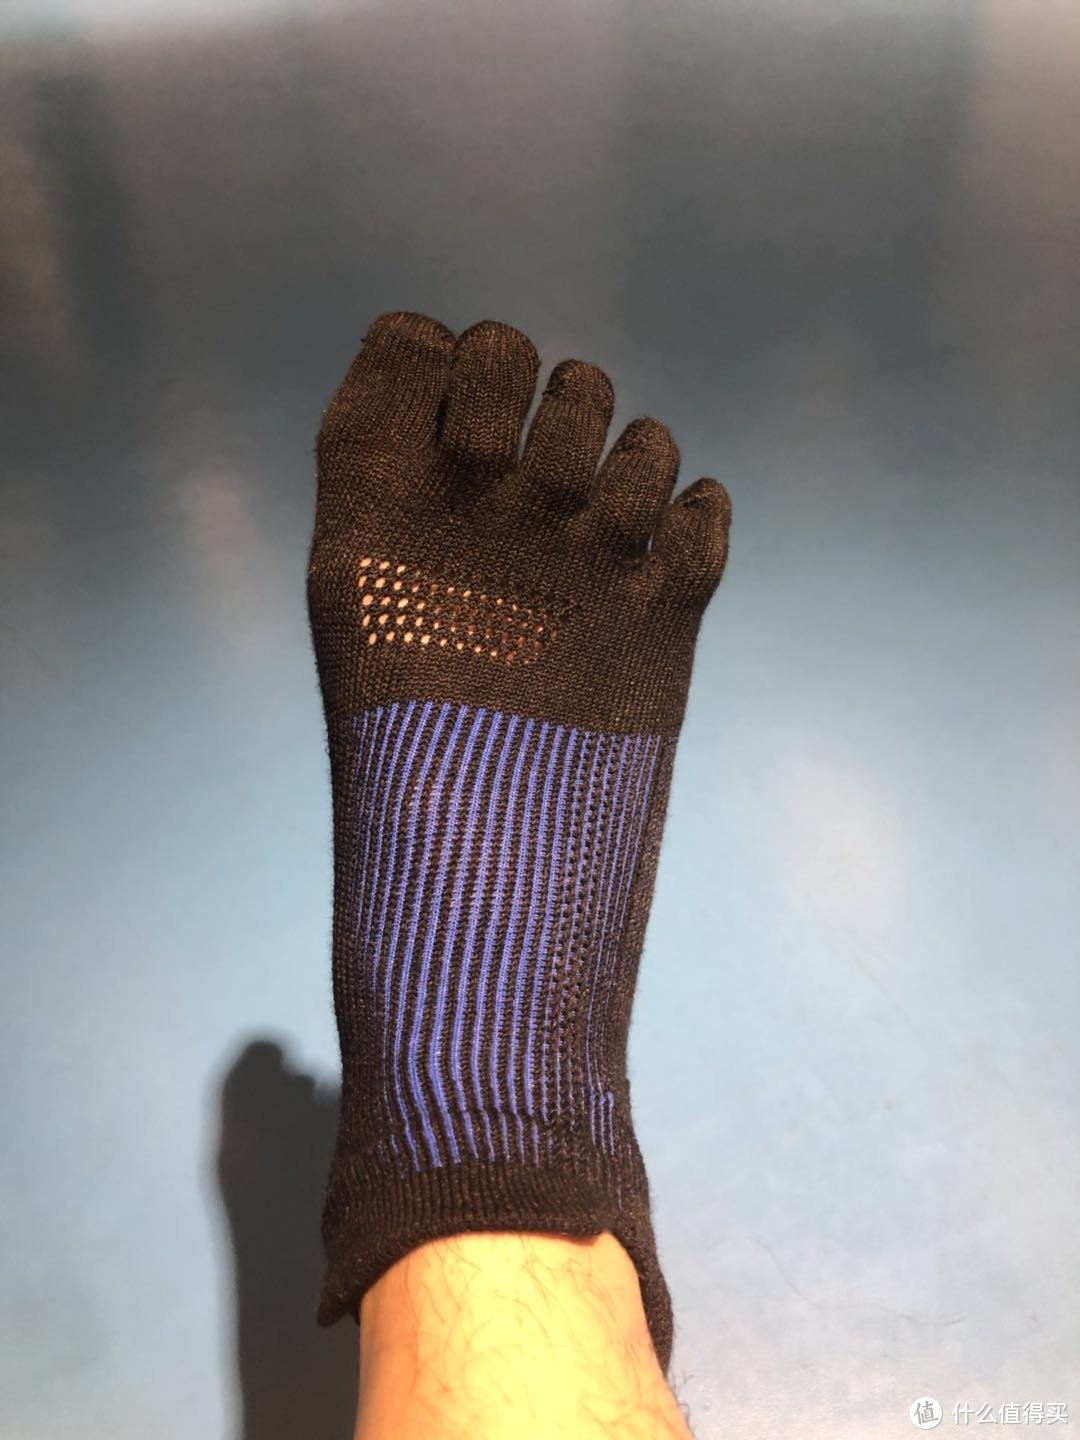 战斗力+1——GEARLAB燃烧装备实验室3D压力五指袜2.0众测评测